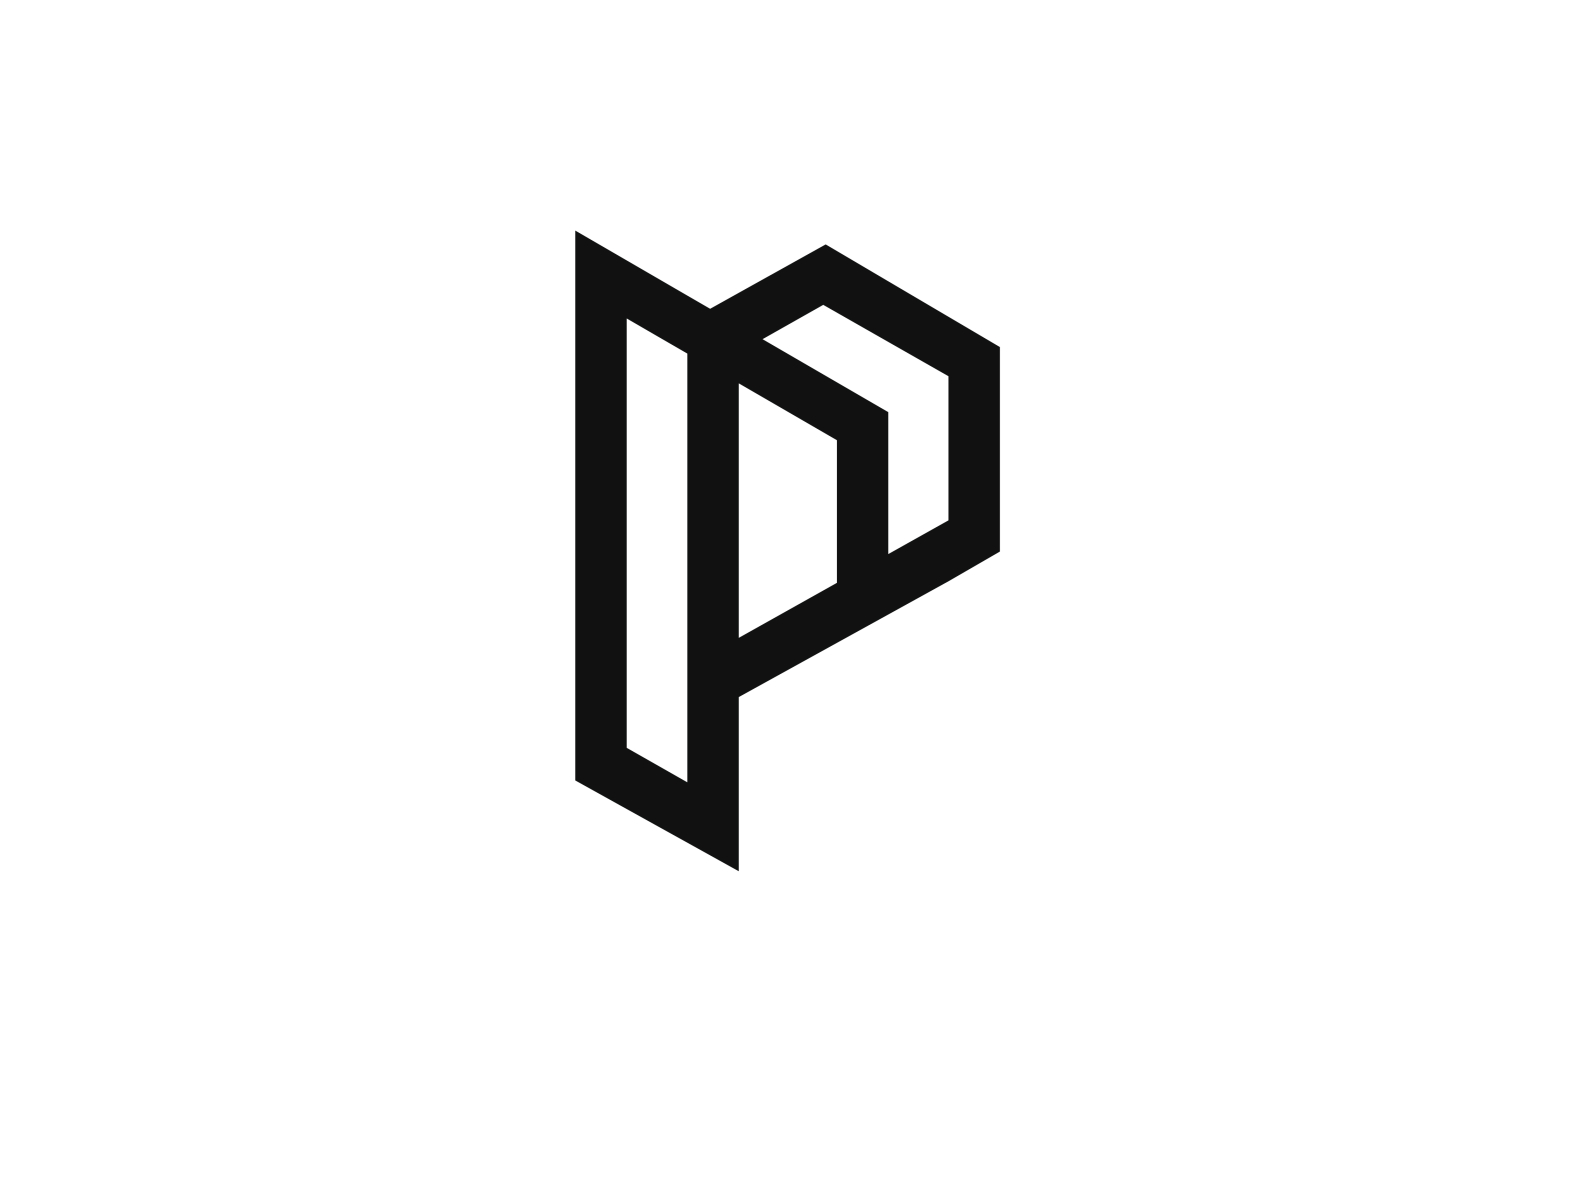 p element symbol